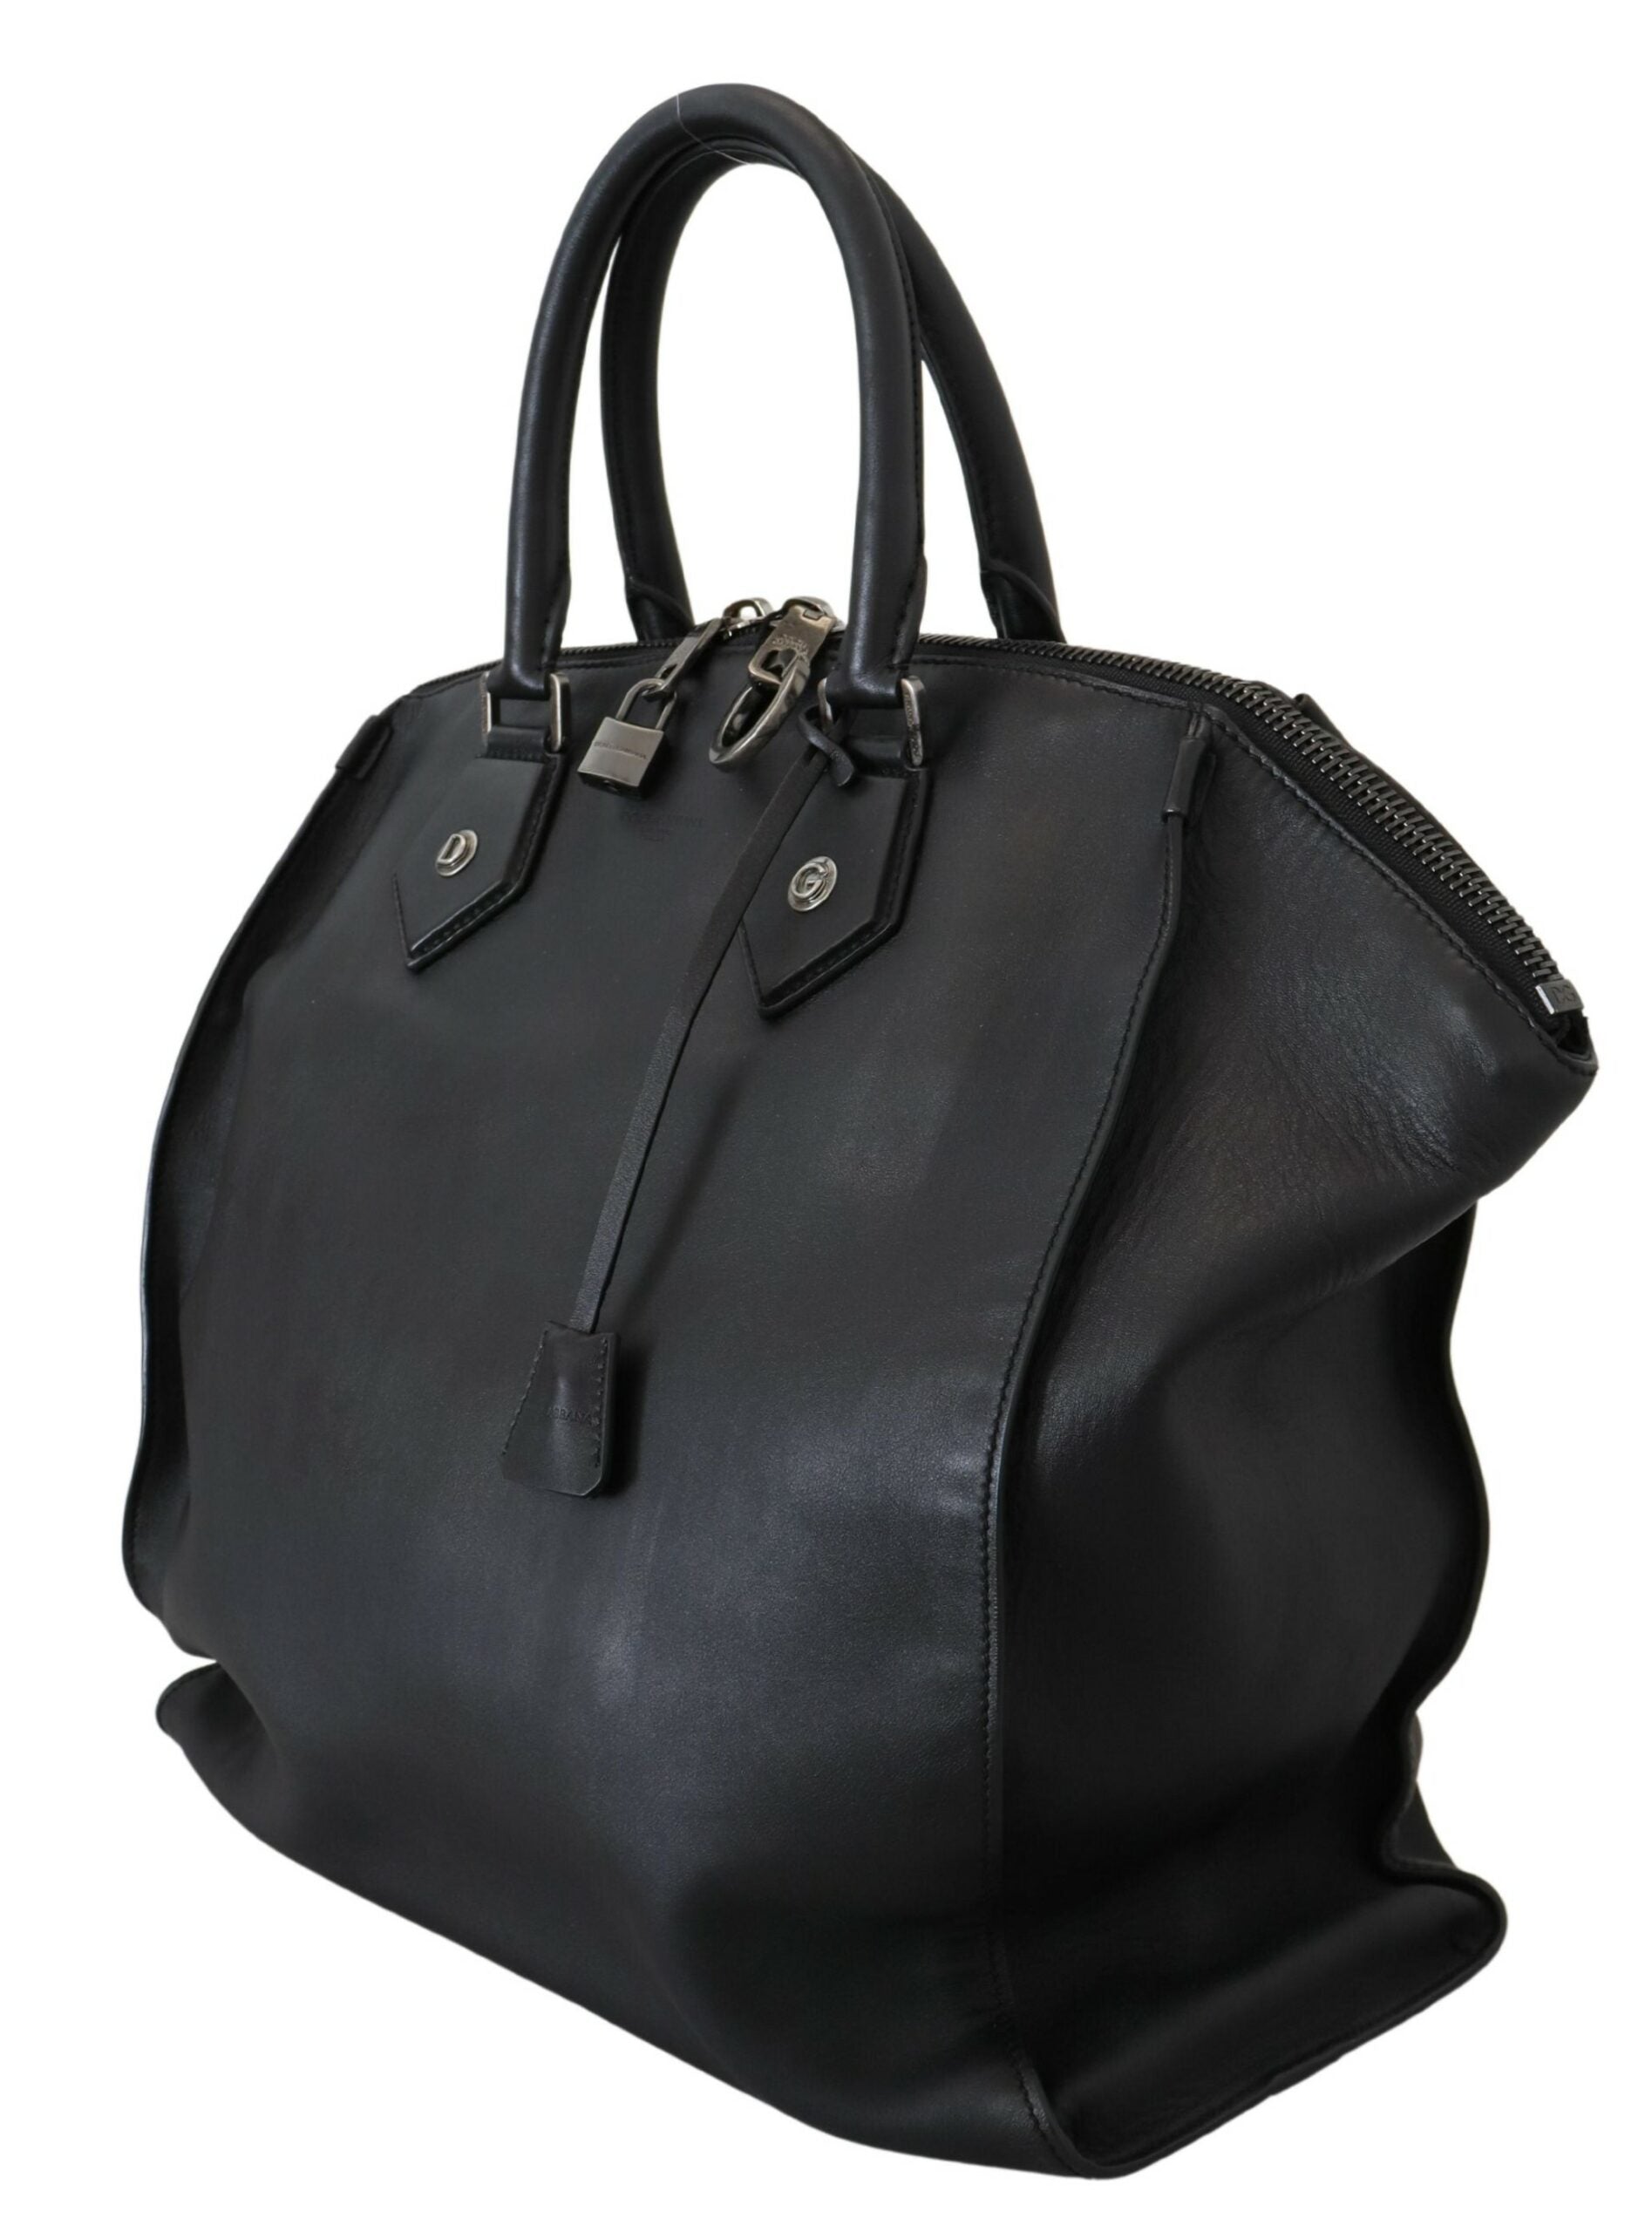 Dolce & Gabbana Black Leather Shoulder Strap Tote Hand Bag - Walbiz.com